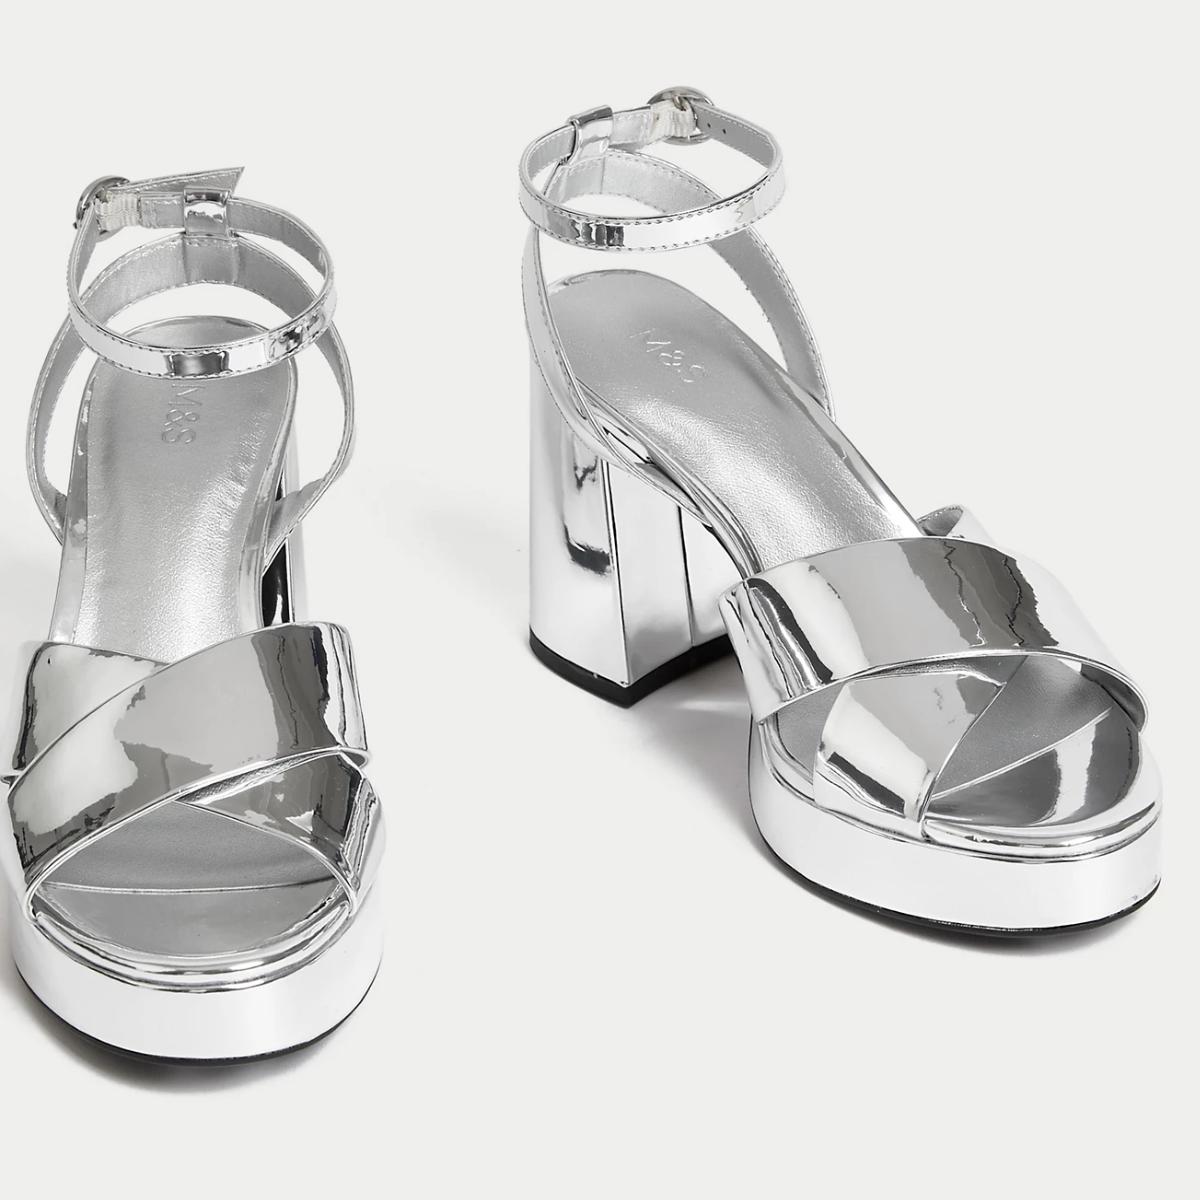 Stylestry Stylish Western Embellished Silver Heels For Women & Girls | Silver  heels, Heels, Pink heels